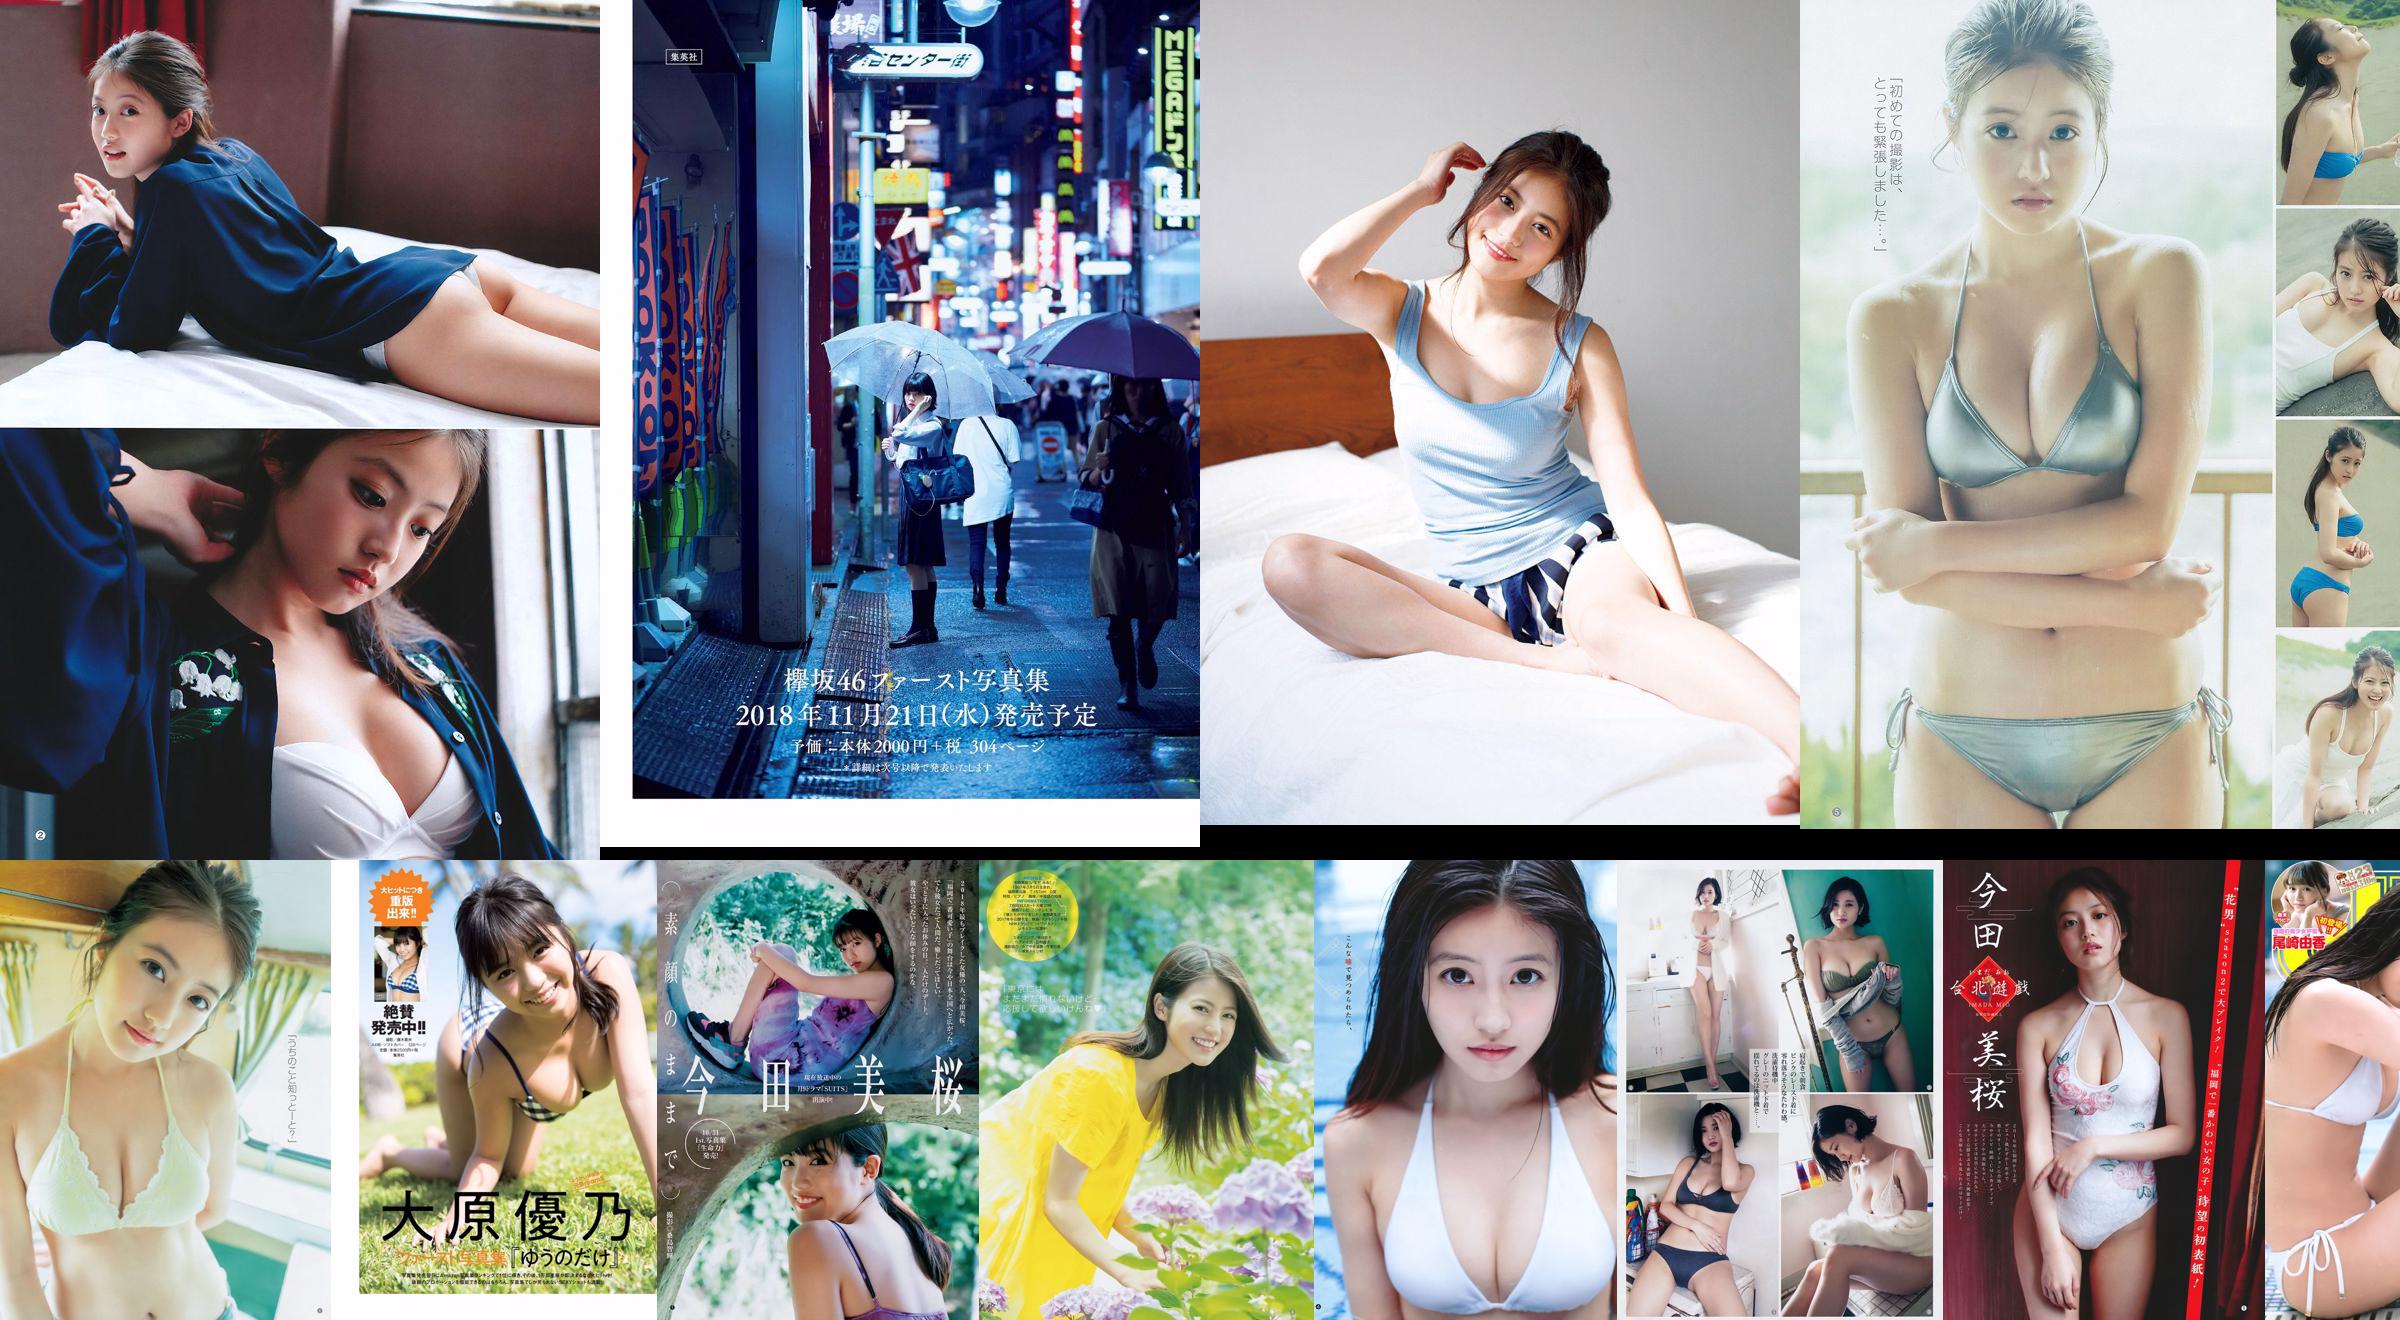 Imada Misakura Sekine Yona exportierte Arisha [Wöchentlicher Jungsprung] Nr. 48 Fotomagazin im Jahr 2018 No.fab0c4 Seite 1